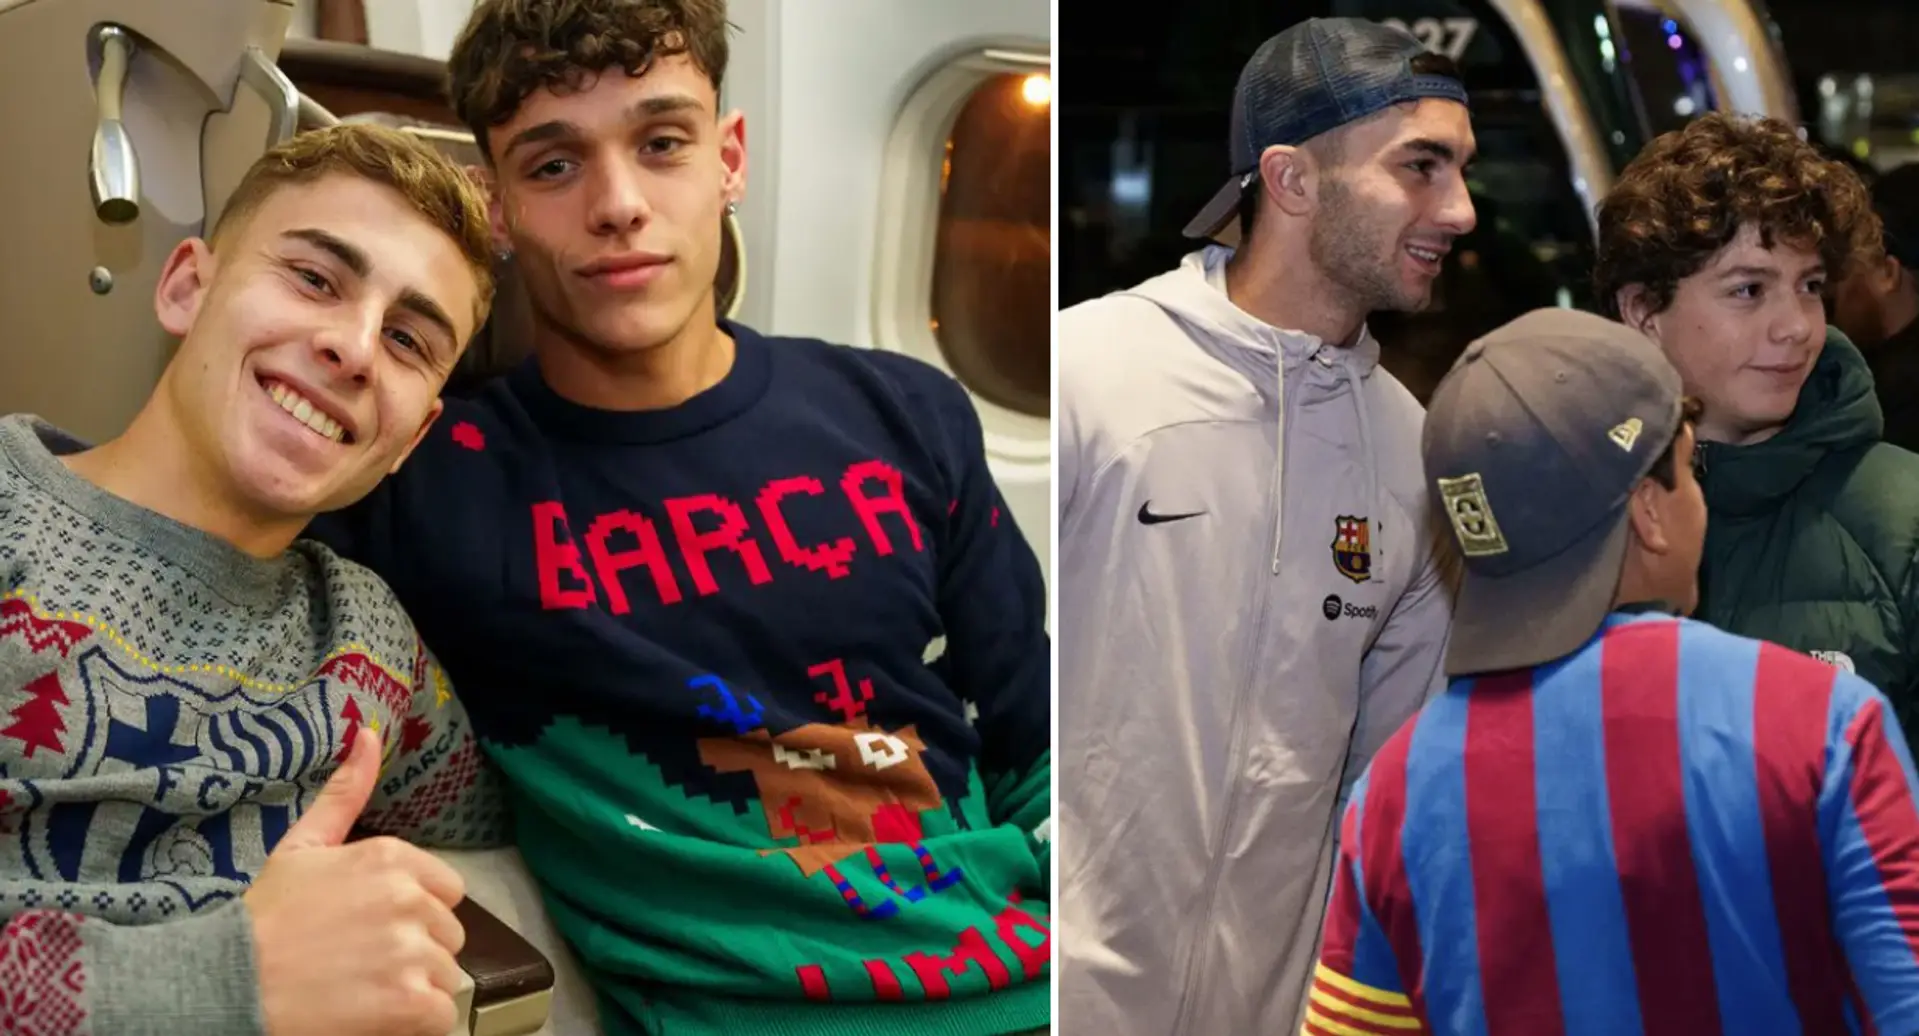 Les joueurs du Barça arrivent à Dallas pour leur match amical de Noël : 8 meilleures photos